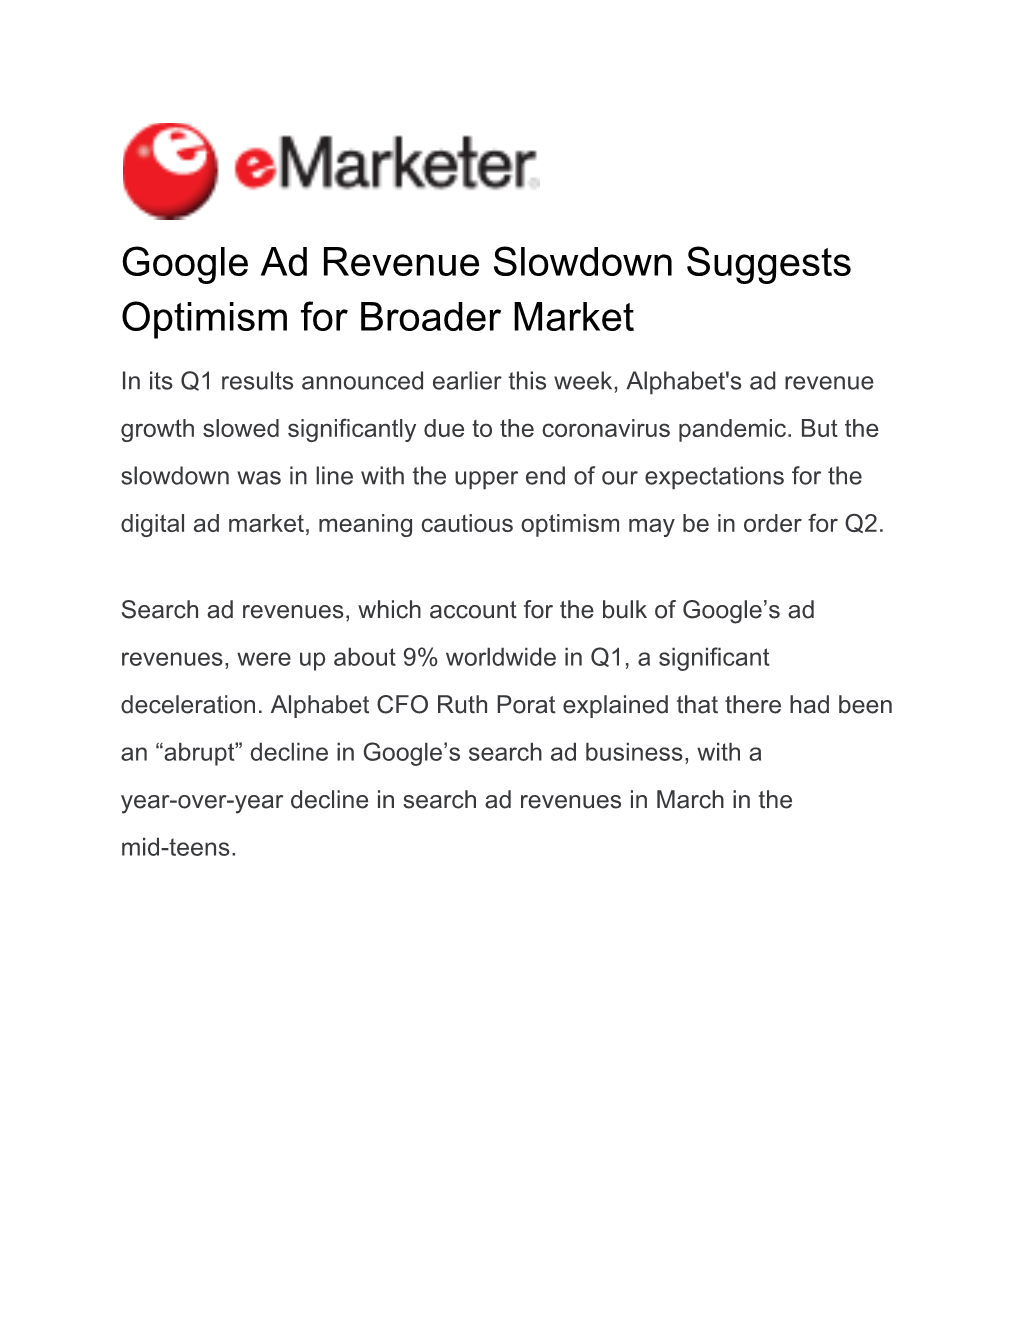 Google Ad Revenue Slowdown Suggests Optimism for Broader Market